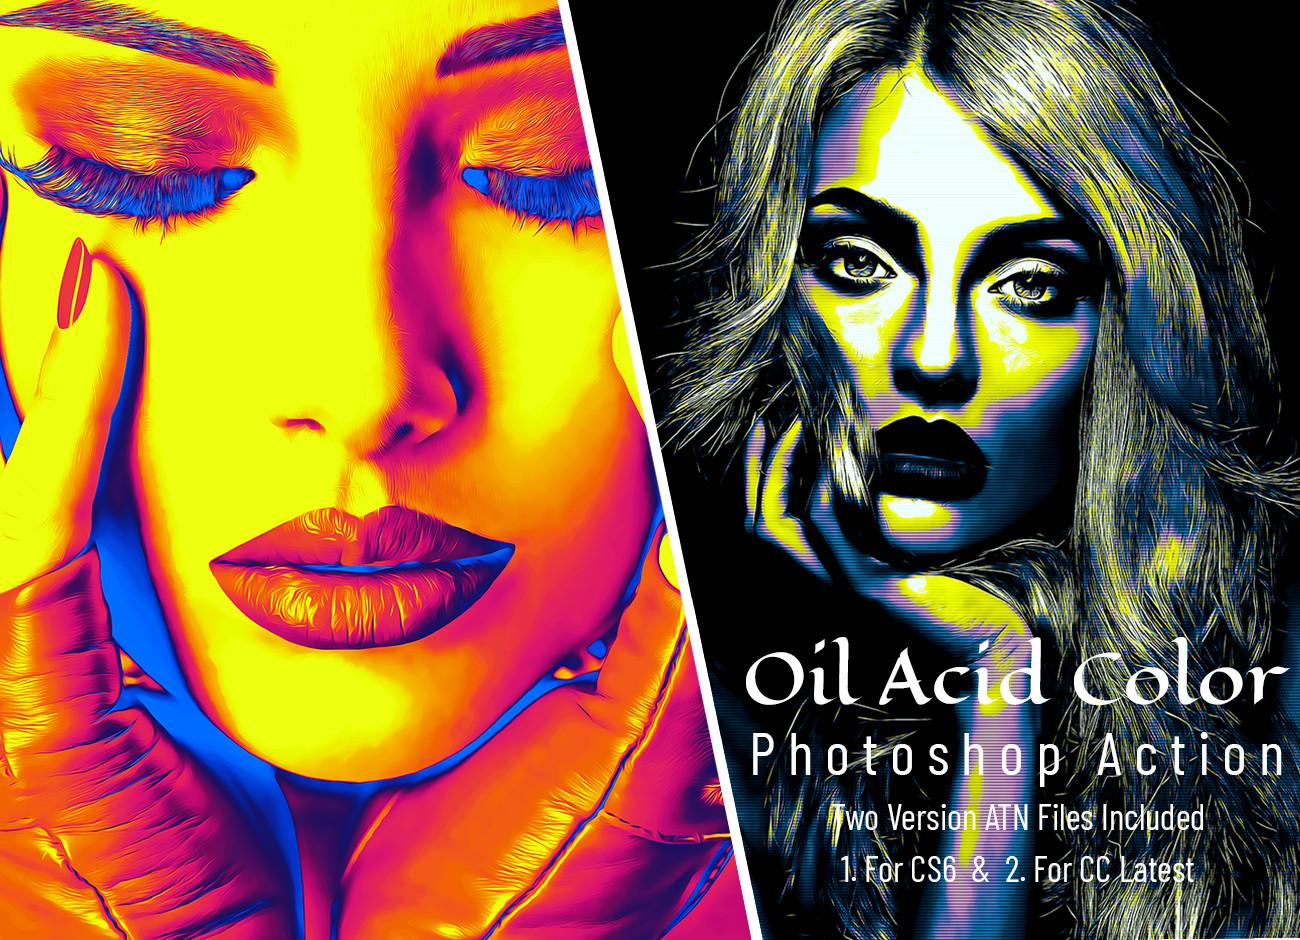 Oil Acid Color Photoshop Action